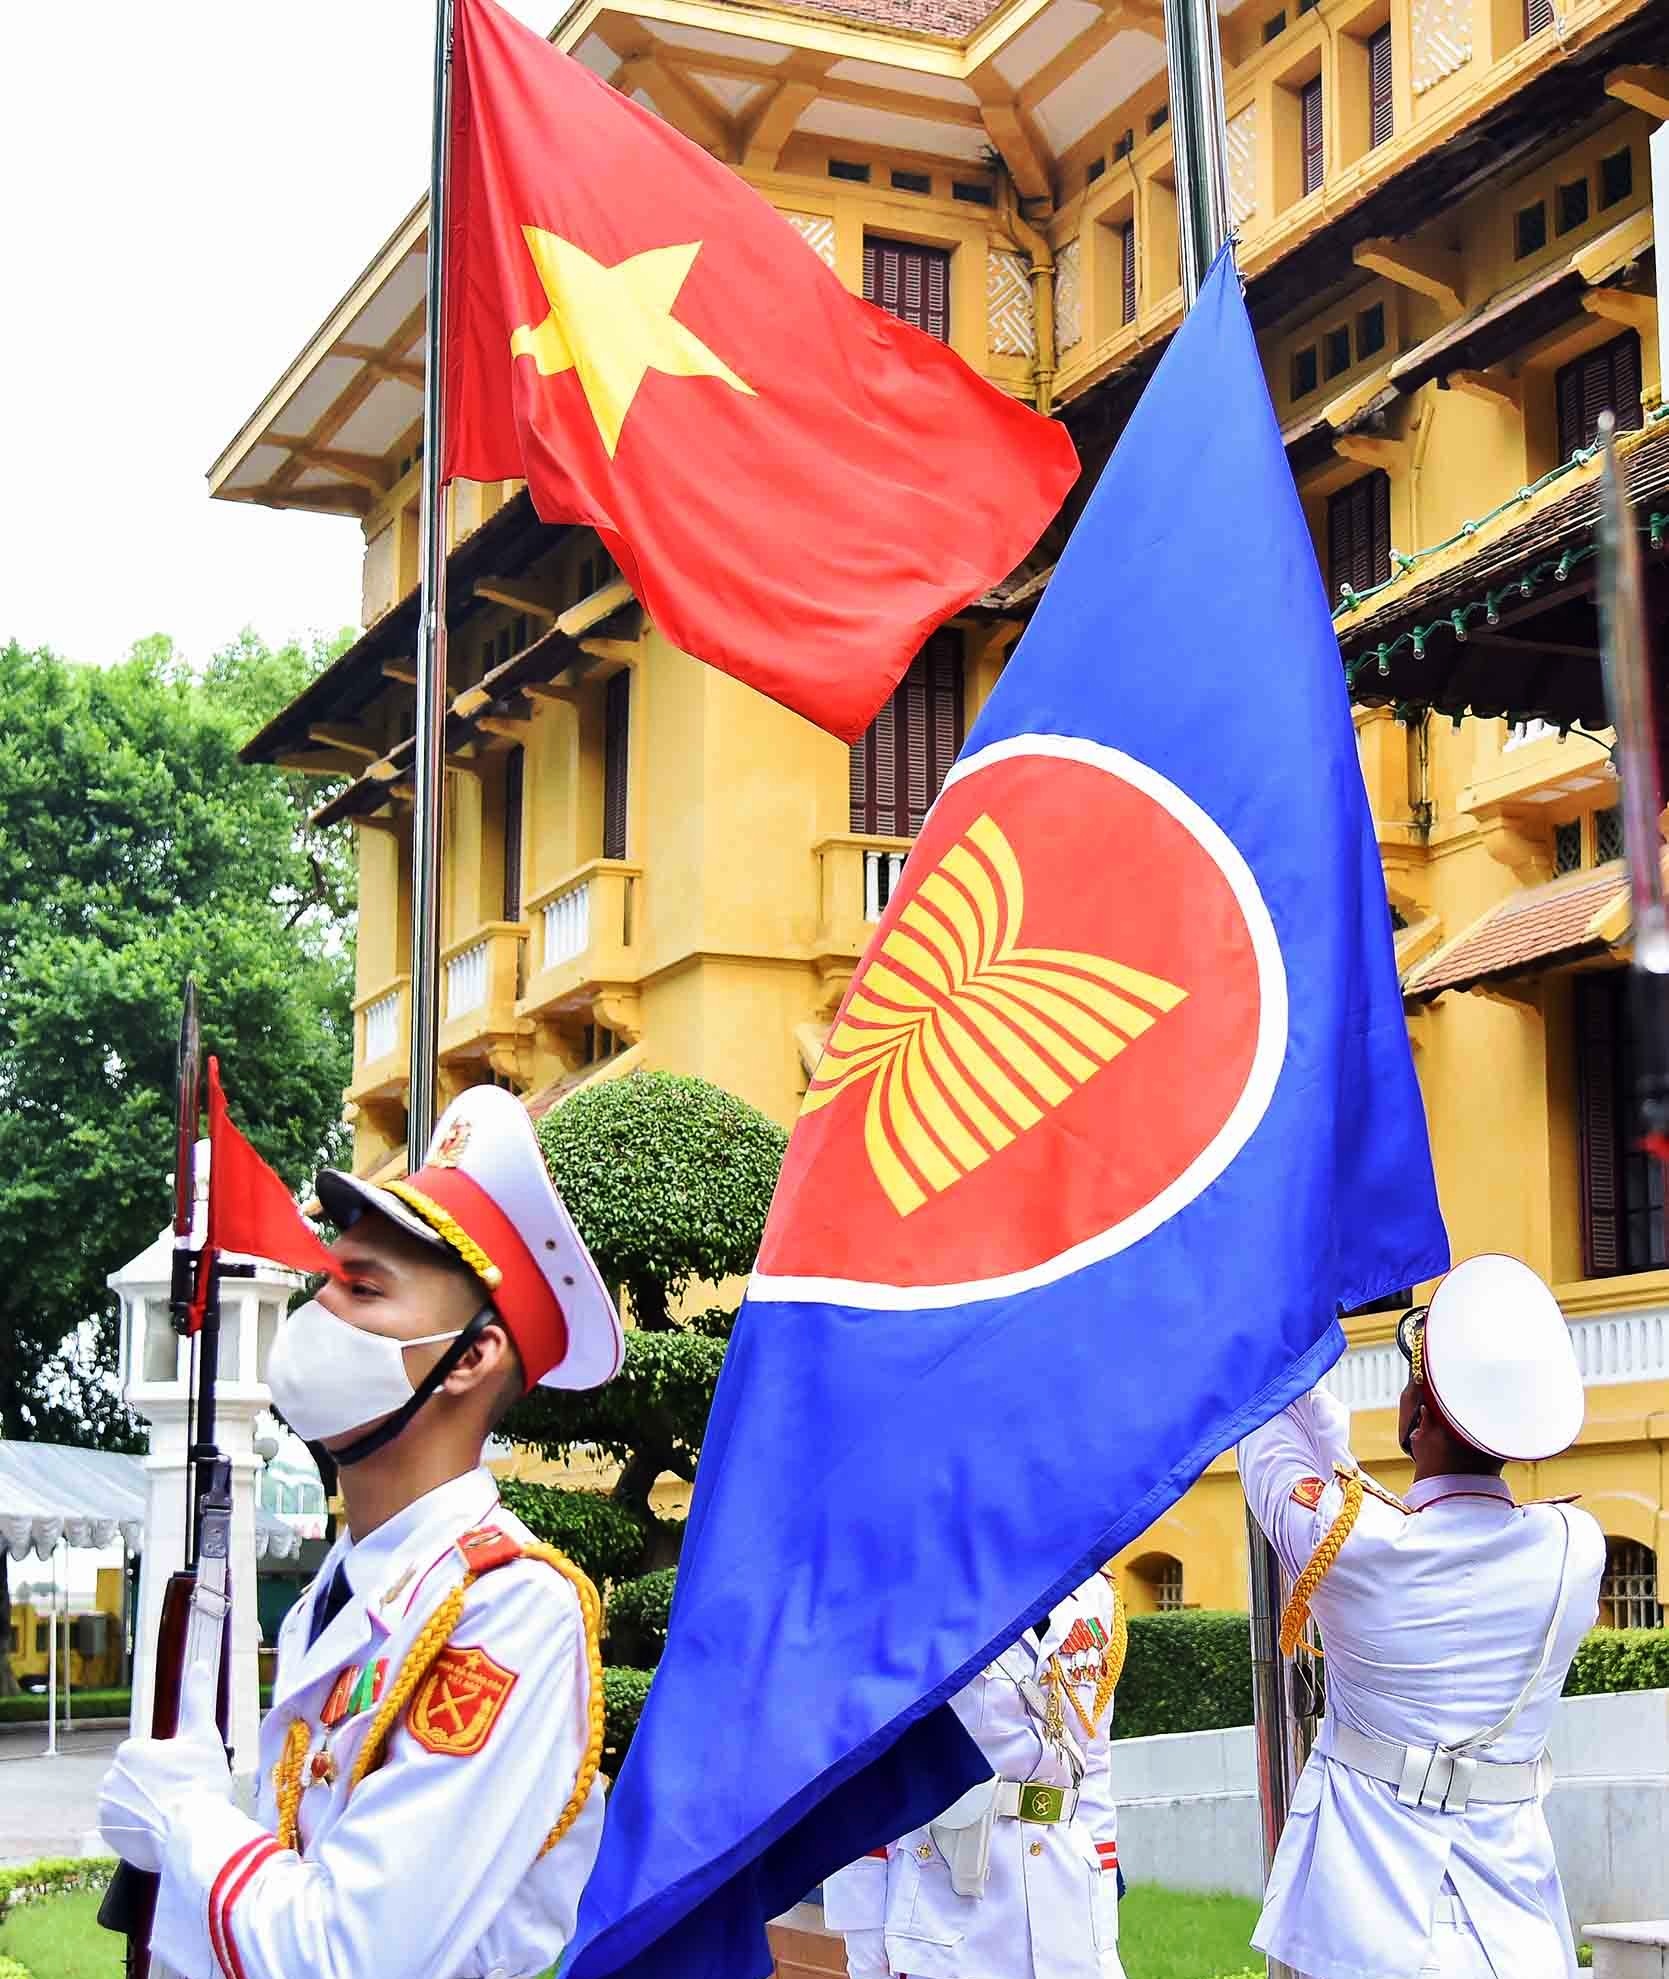 Lễ kỉ niệm ASEAN 55 năm đã diễn ra với sự tham gia của các nhà lãnh đạo ASEAN. Đây là dịp để đánh dấu mốc quan trọng trong sự phát triển của ACEAN. Đồng thời, sự kiện này cũng giúp cho các quốc gia ASEAN nhận được sự chú ý và quan tâm của thế giới đối với những cống hiến và đóng góp của họ cho khu vực này.